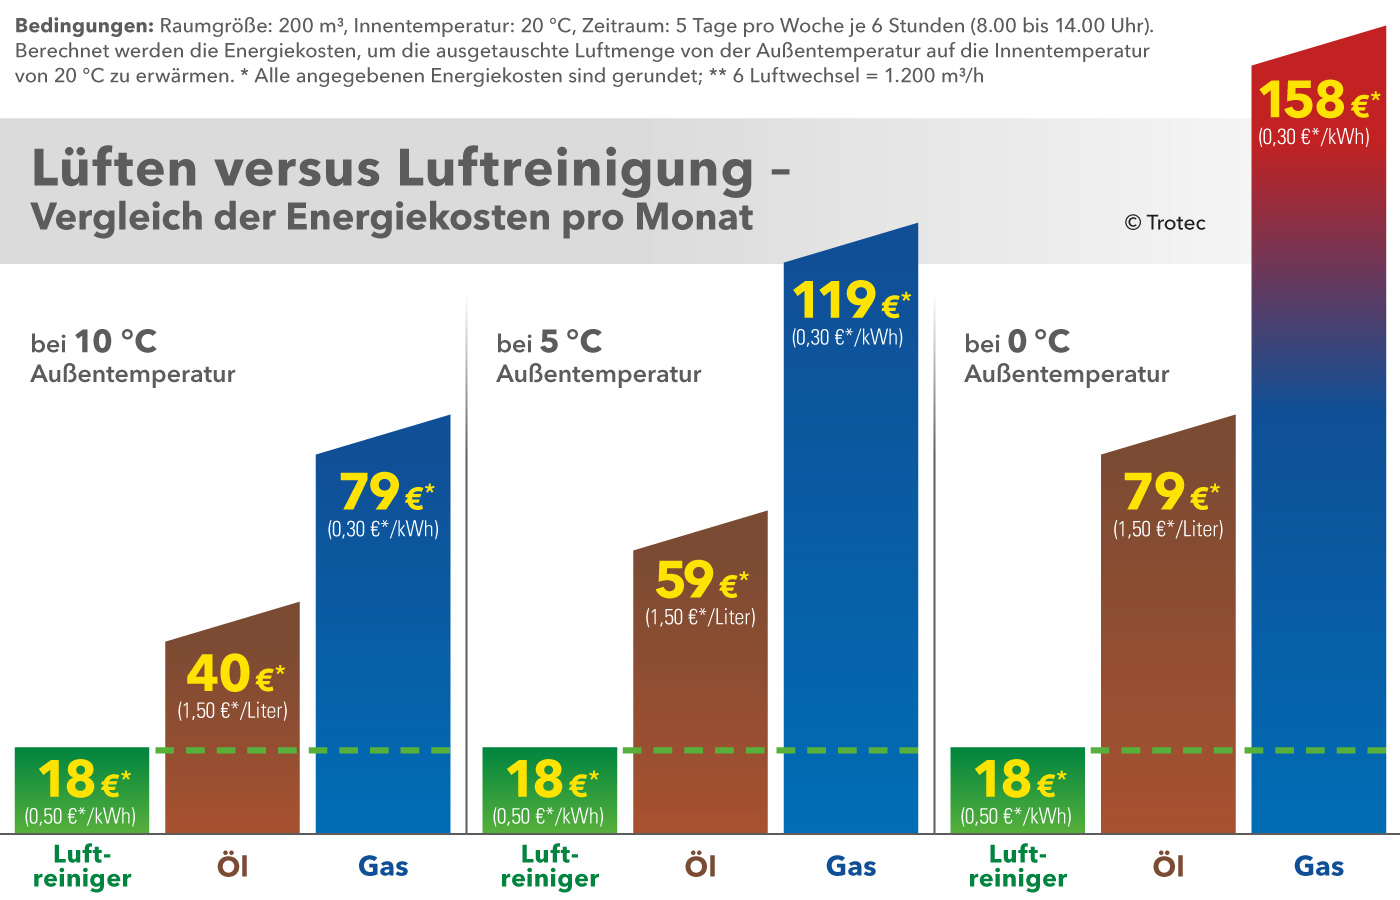 Lüften versus Luftreinigung – Vergleich der Energiekosten pro Monat